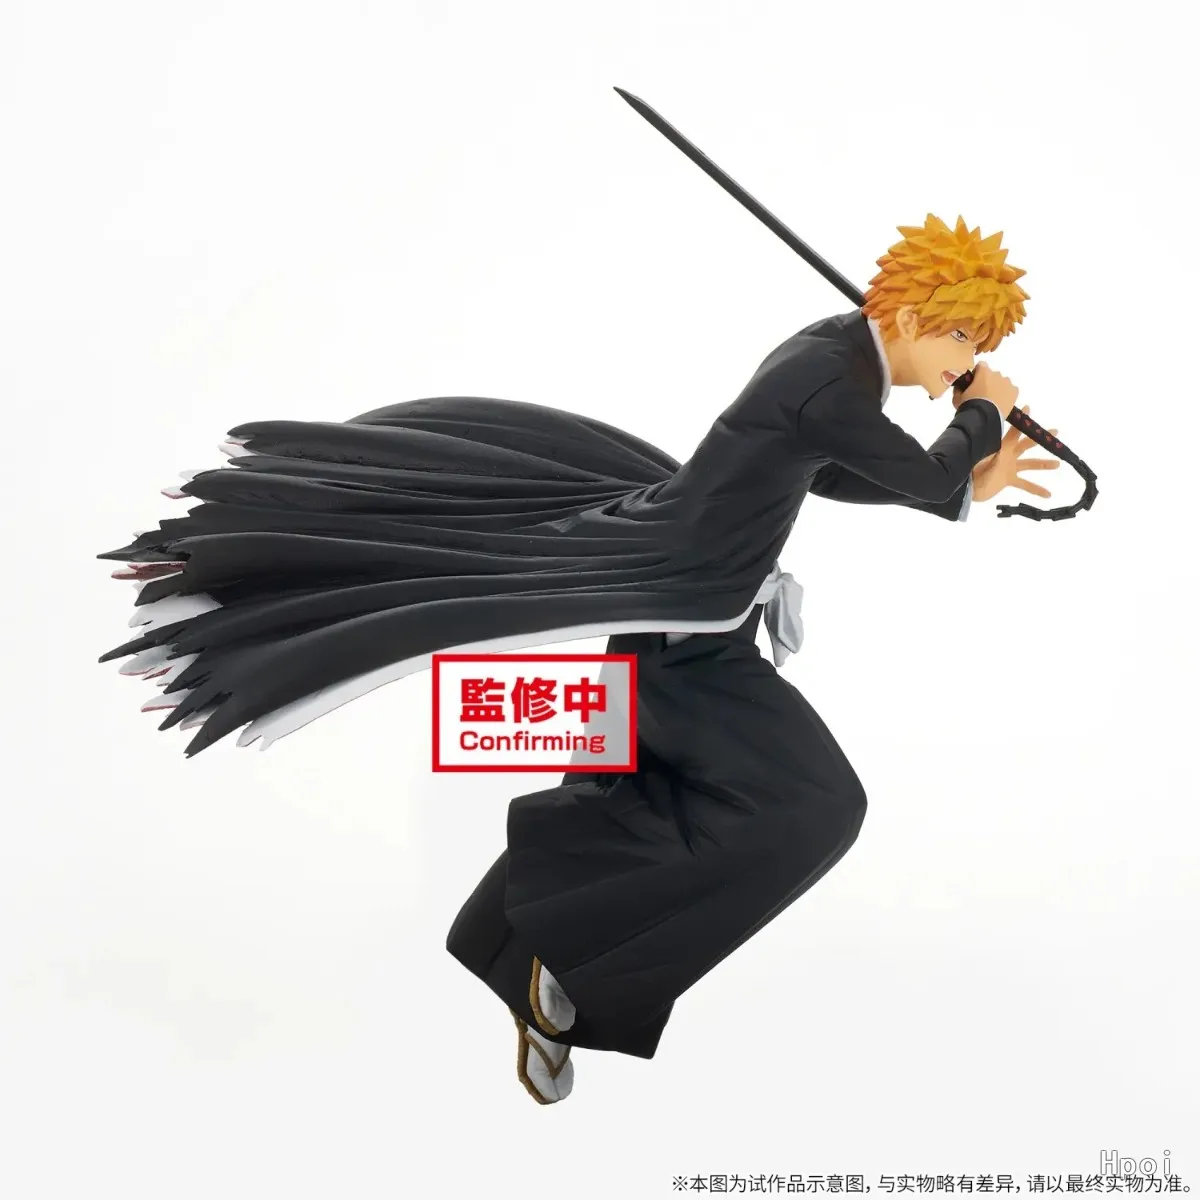 BLEACH Anime Kurosaki Ichigo PVC Figura de Acción de Ornamentos 100% Original, Genuina Modelo de la Colección de Muñecas Juguetes de Realshot . ' - ' . 3